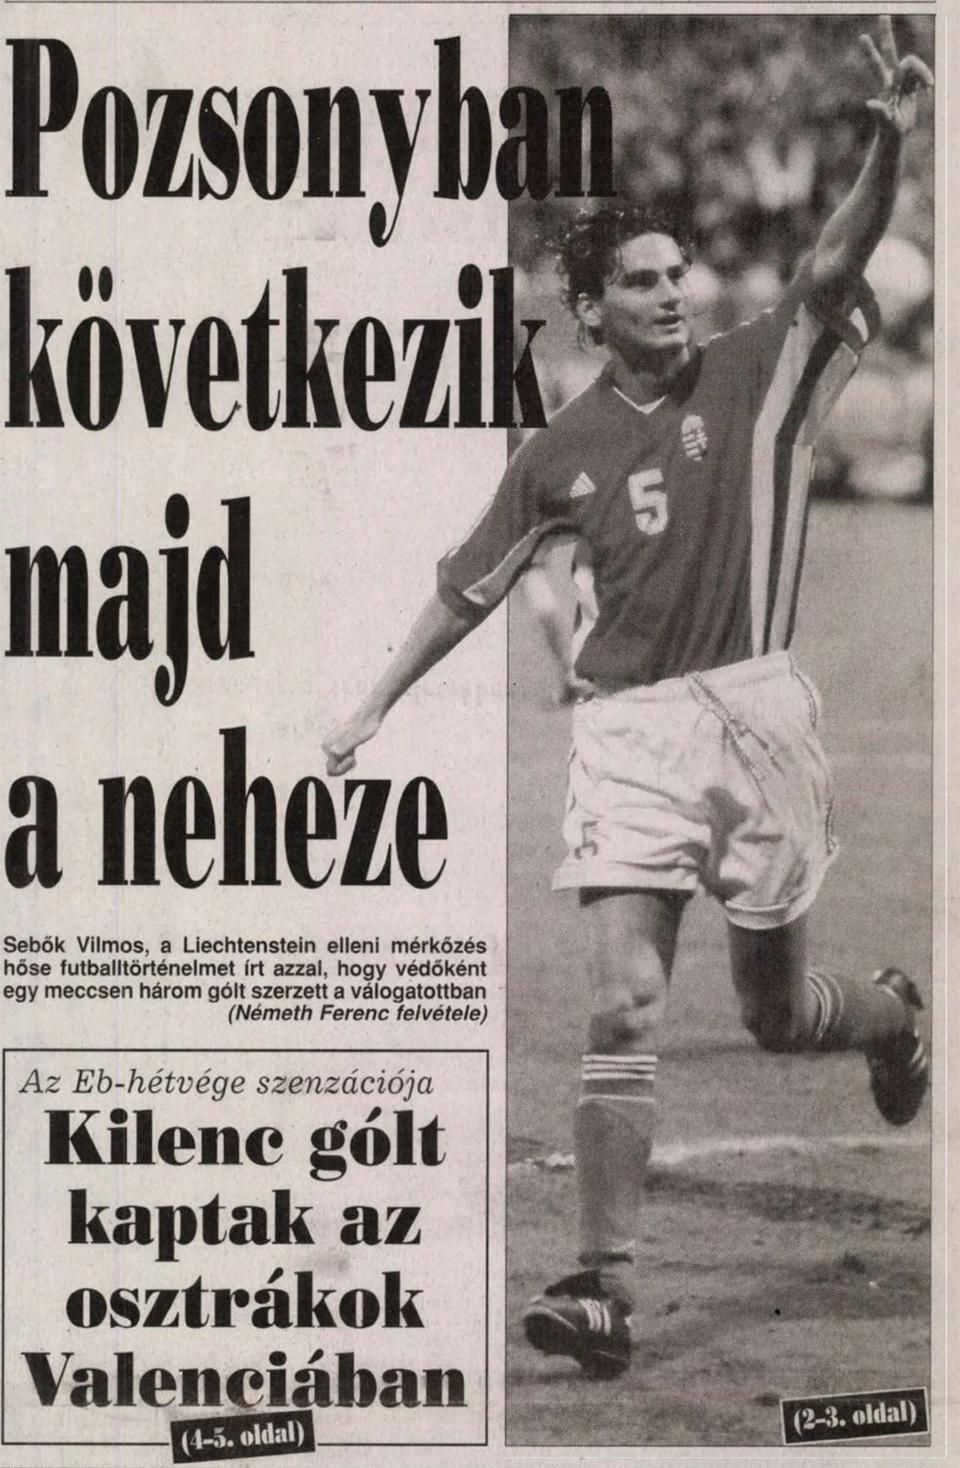 Sebők Vilmos gólöröme harmadik találata után a Nemzeti Sport 1999. március 29-i címlapján